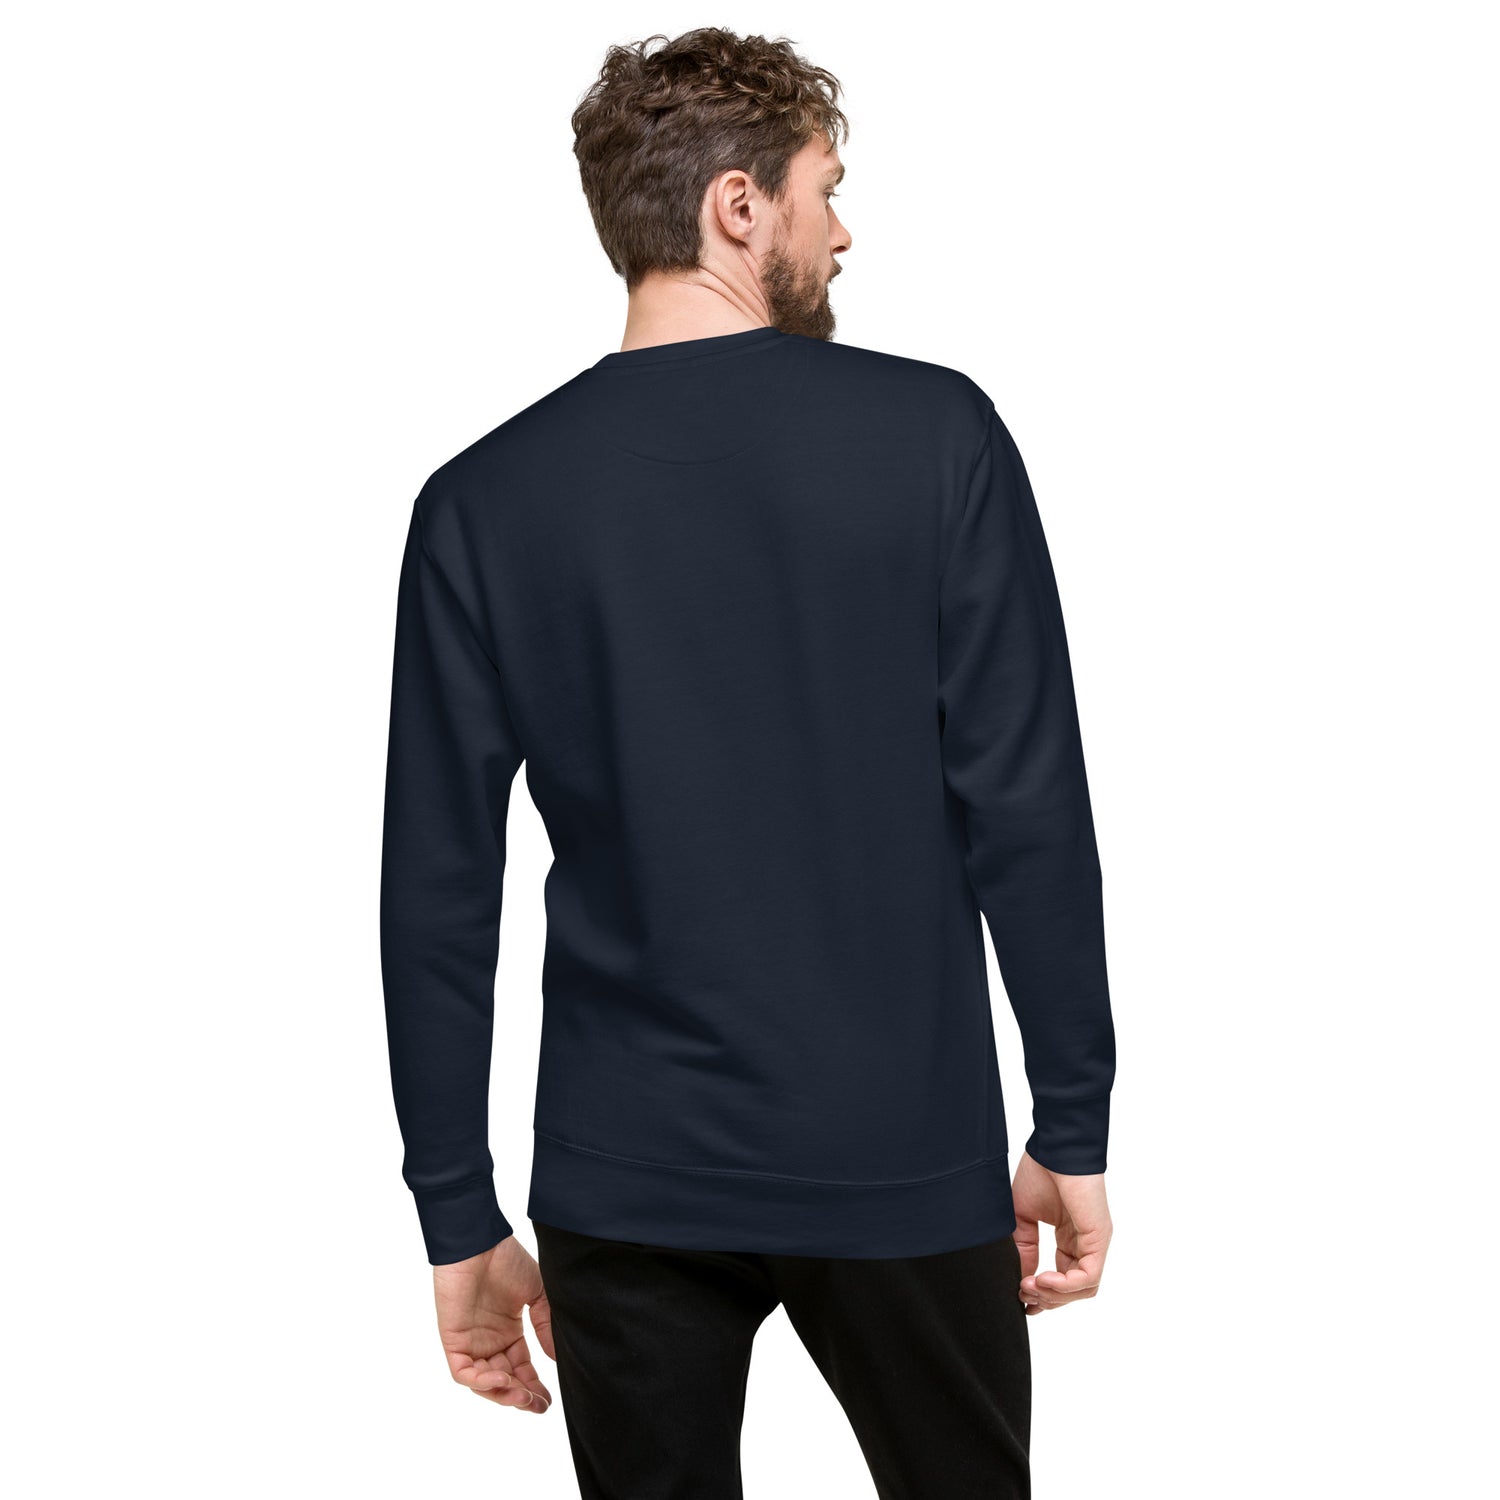 TIME OF VIBES Premium Sweatshirt VIBES (Marineblau/Weiß) - €59,00